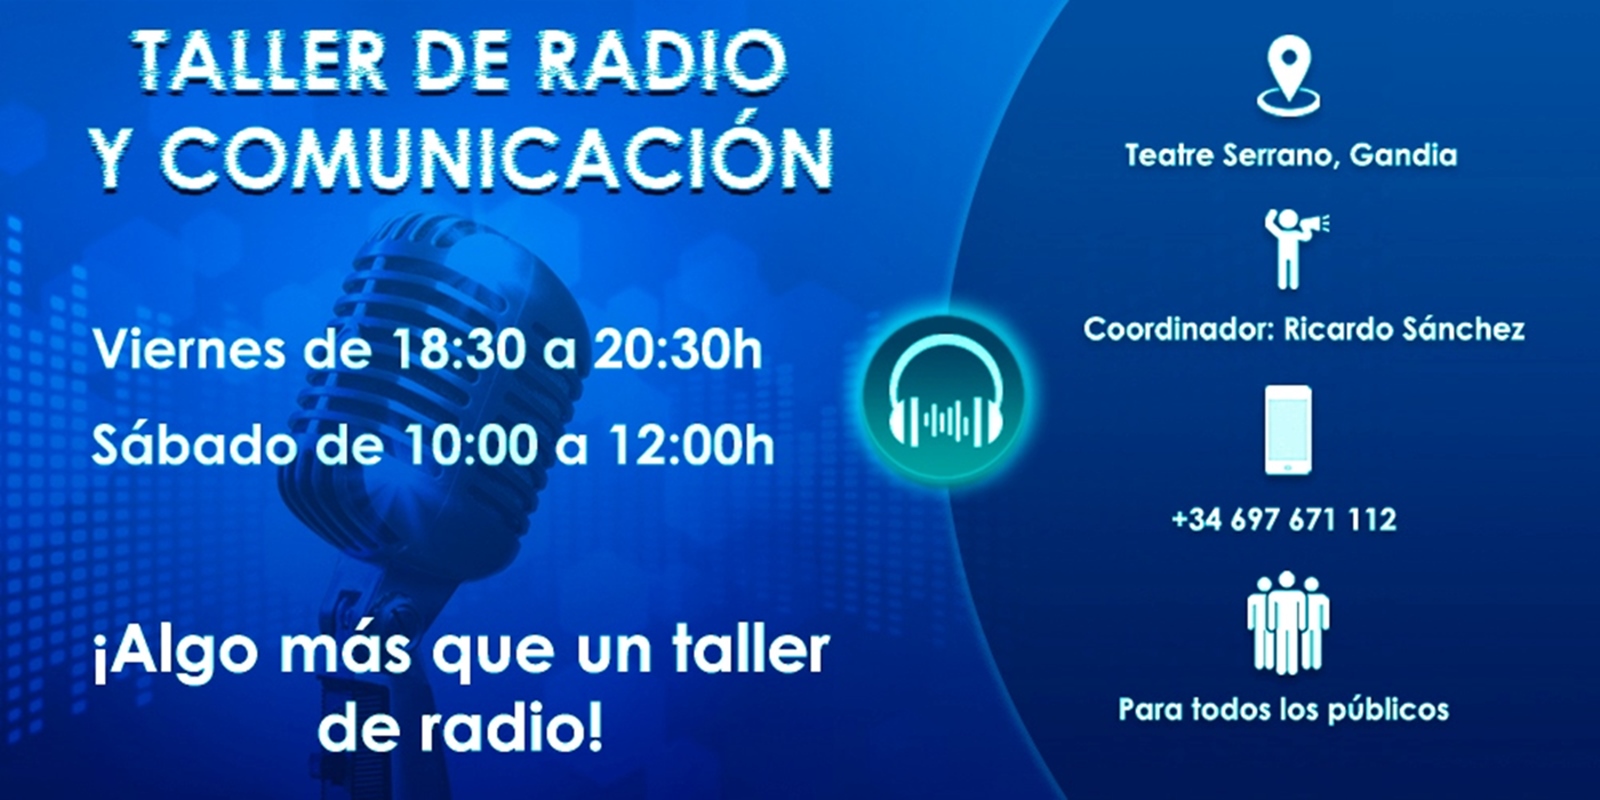 Ww Wap Inxxxx - Taller de Radio y ComunicaciÃ³n en el Teatre Serrano de Gandia | Safor Press